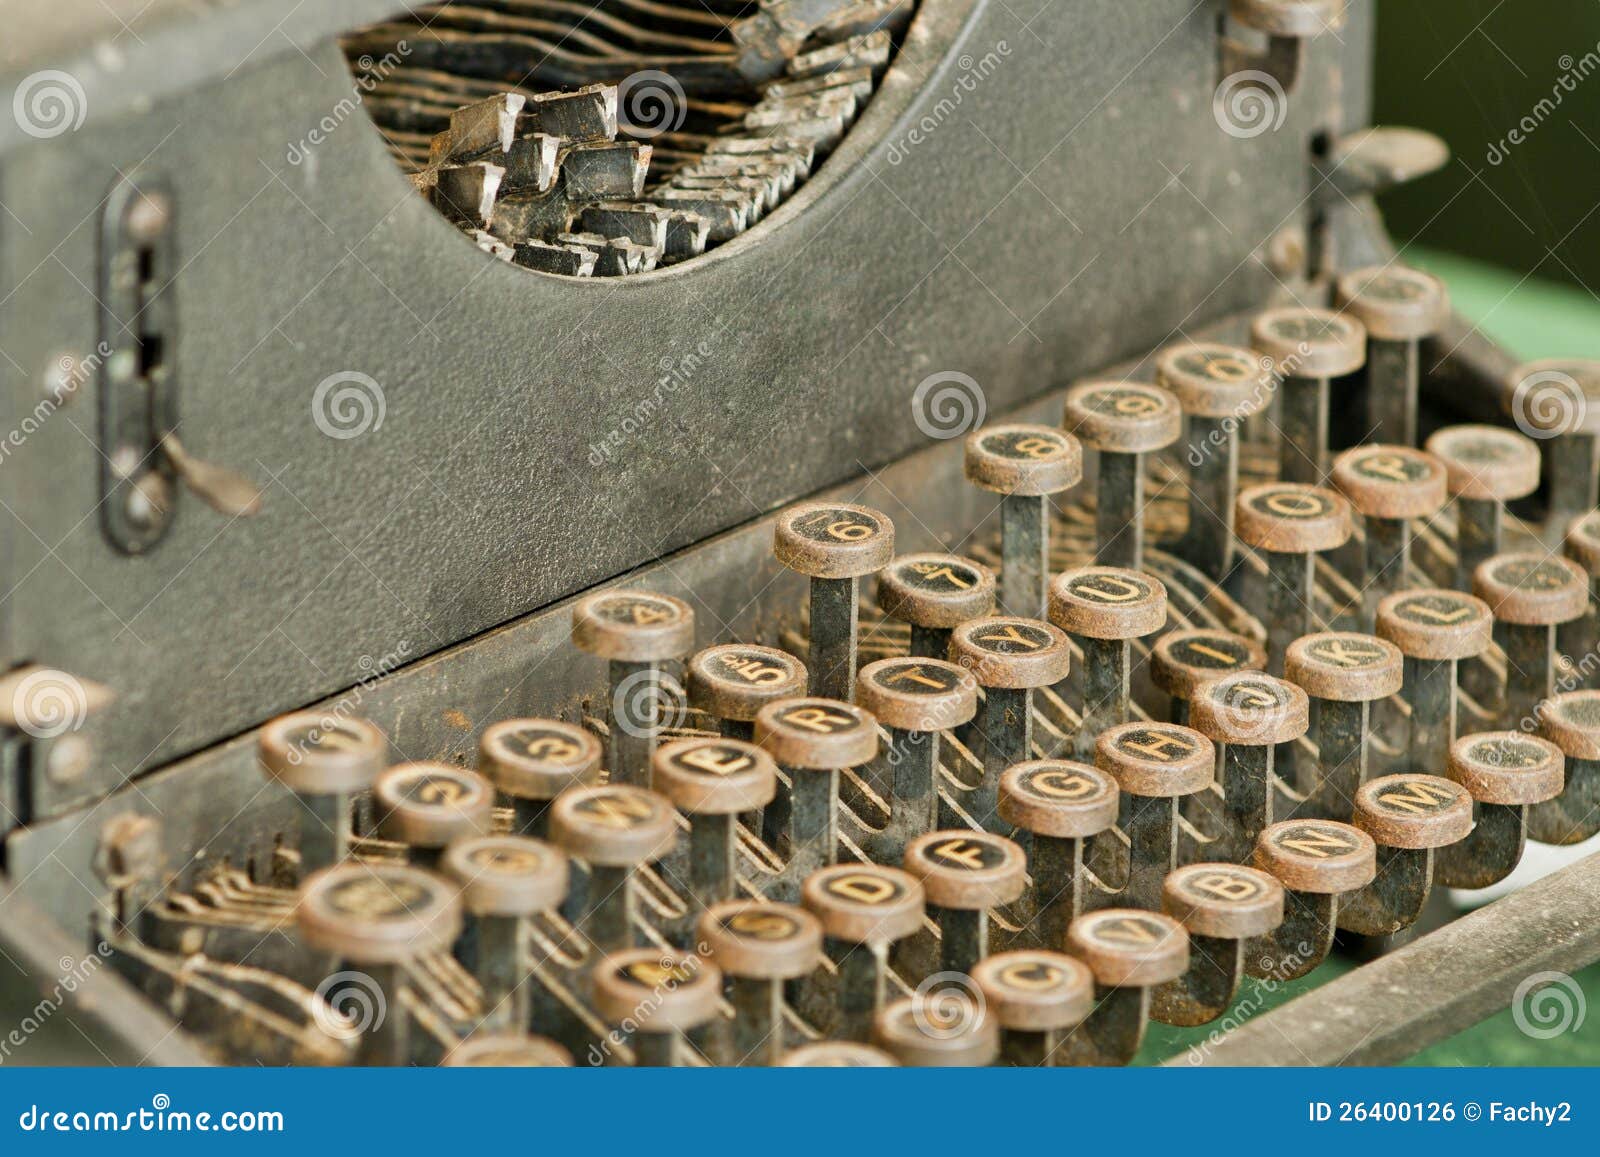 vintage retro typewriting machine